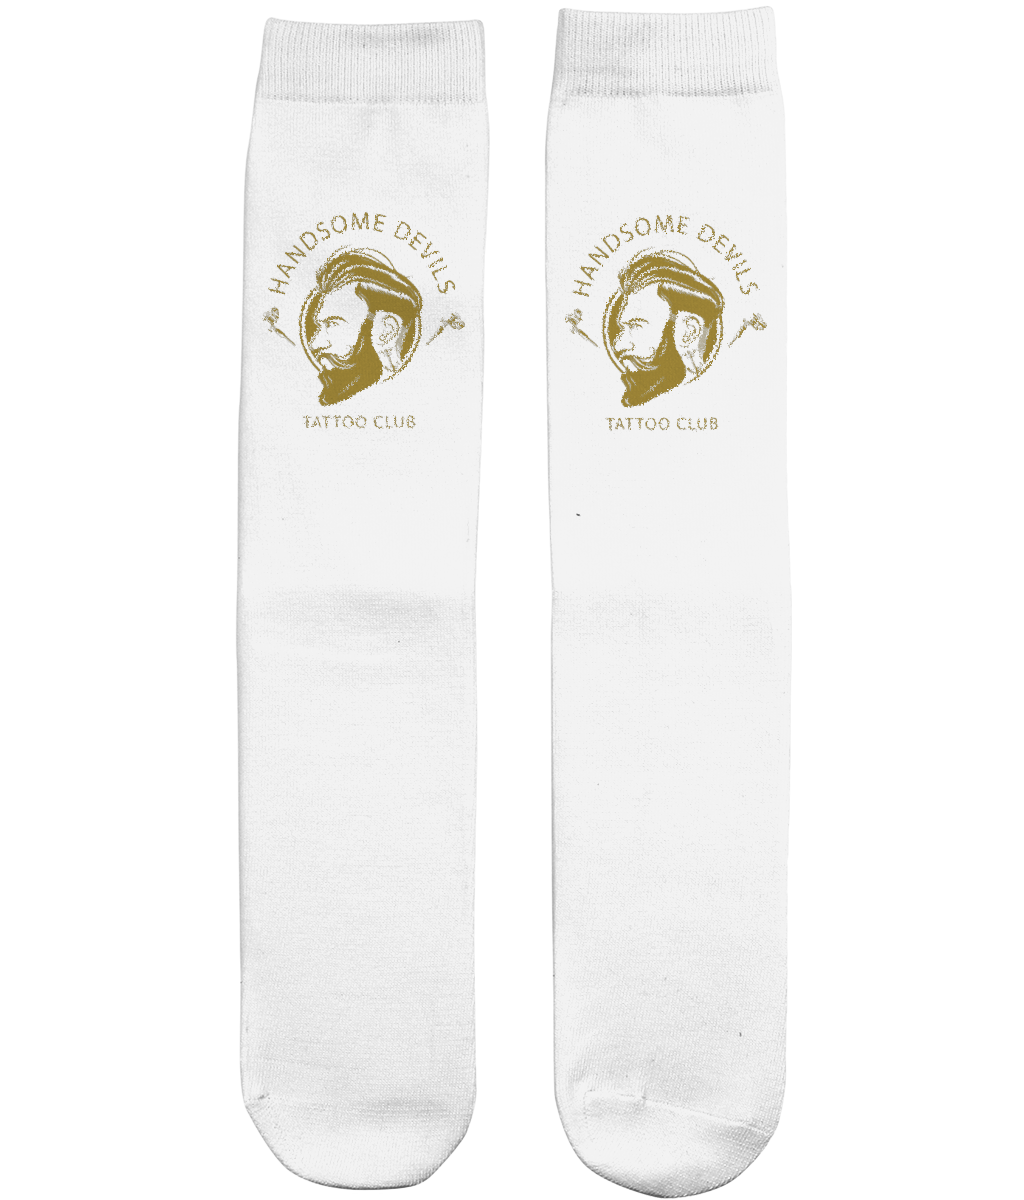 Unisex Tube Socks - White & Gold